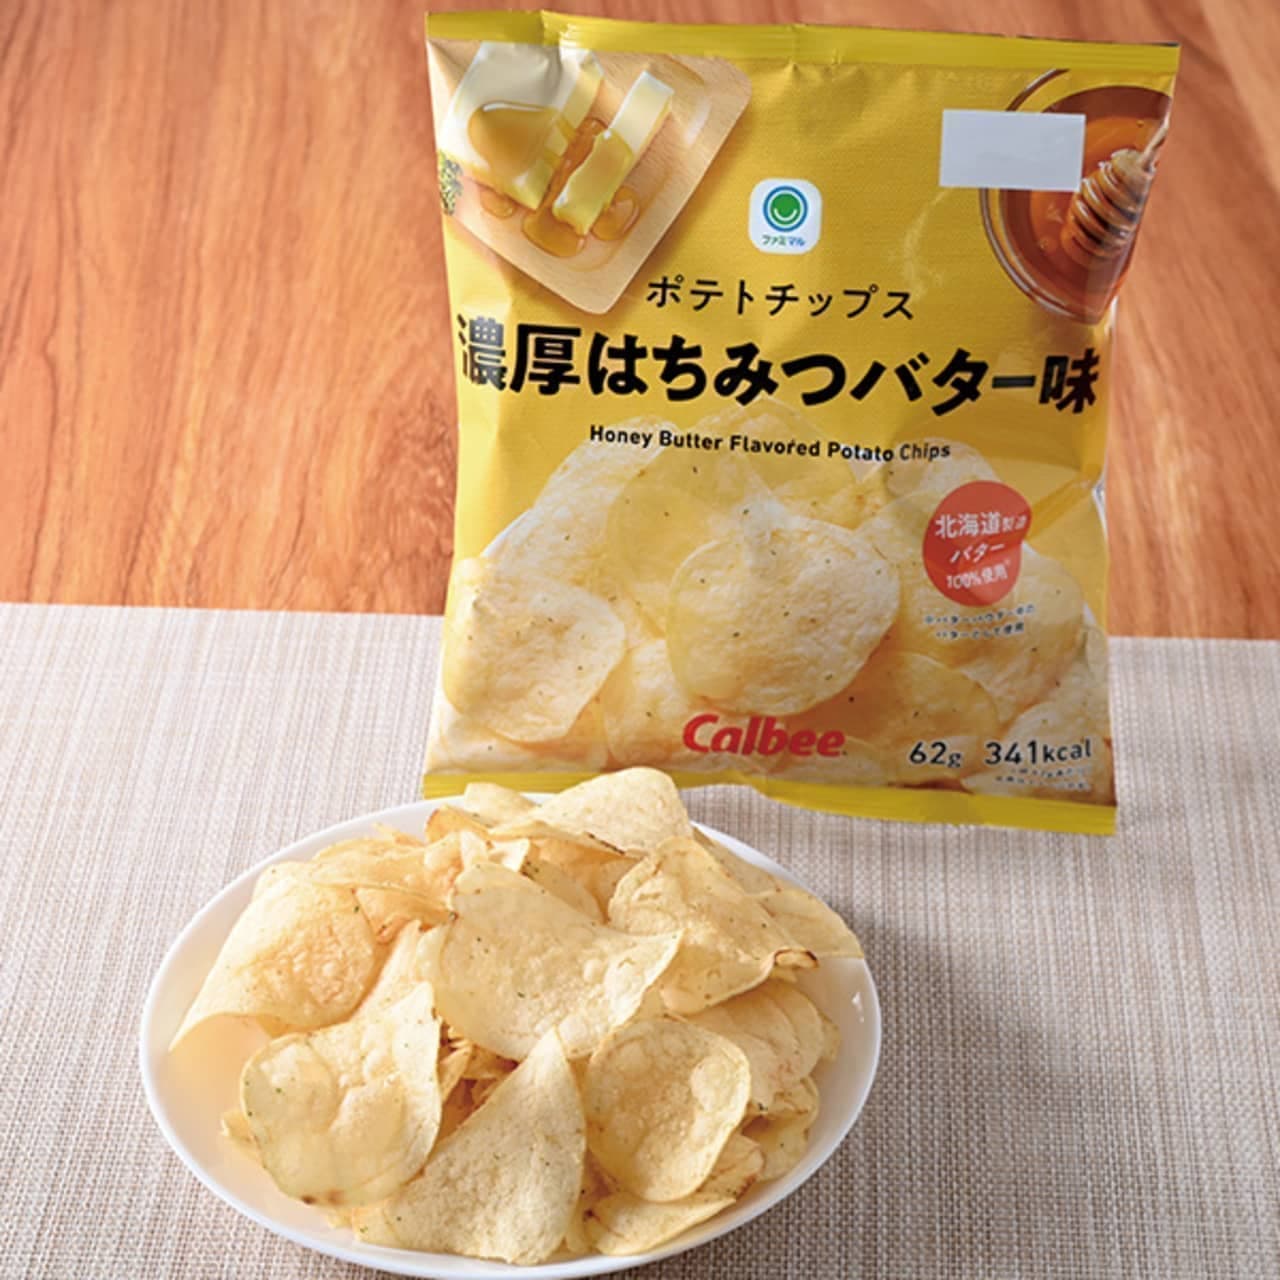 FamilyMart "Potato Chips Thick Honey Butter Flavor